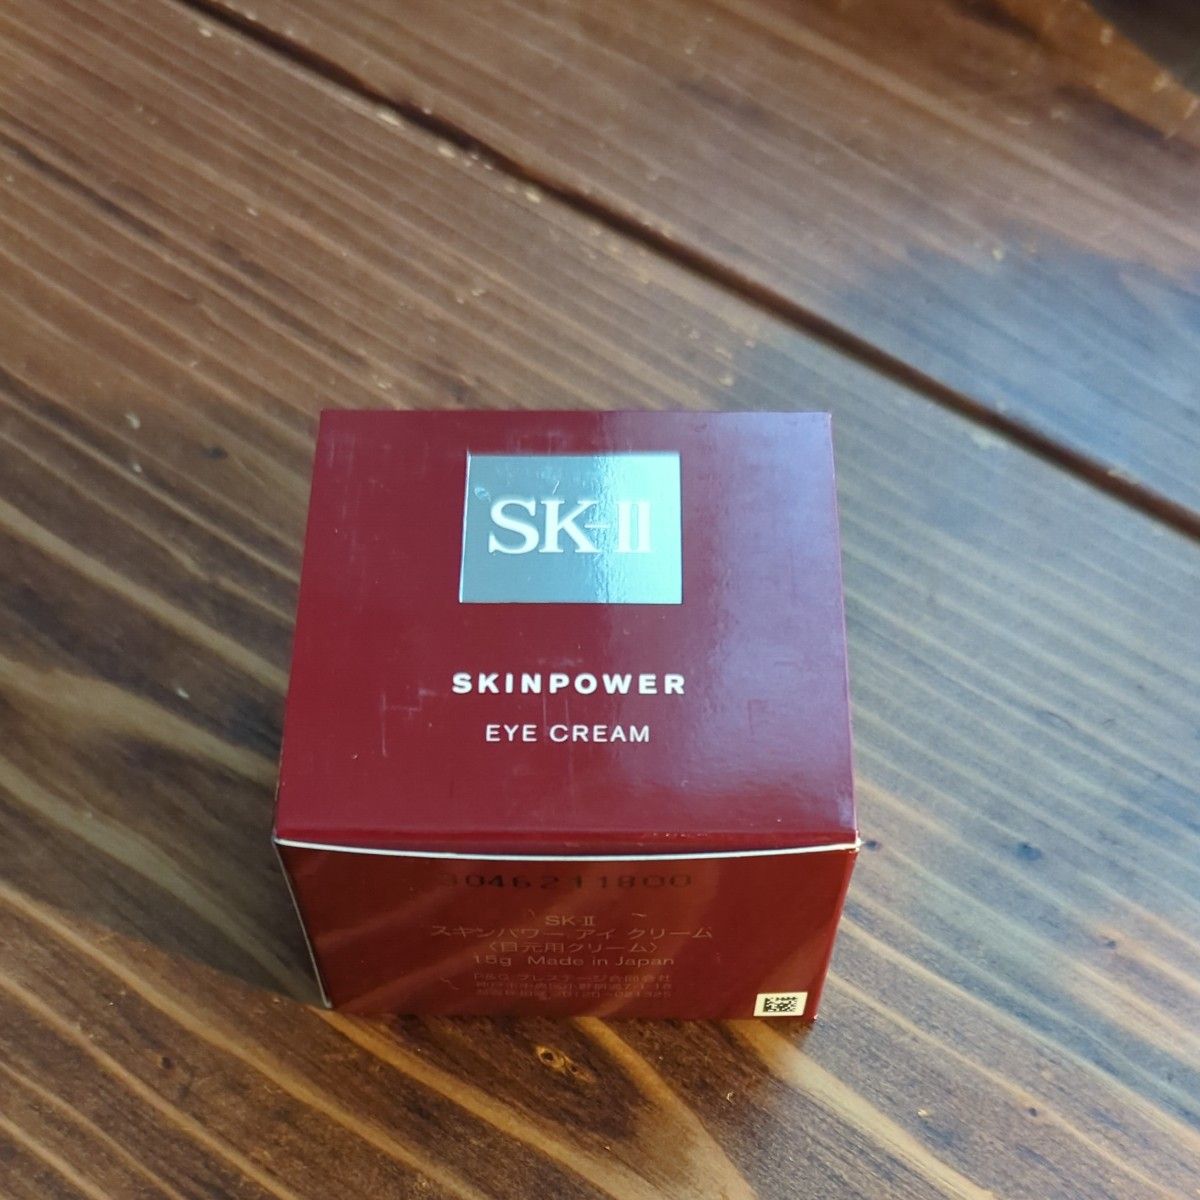 SK-II スキンパワー アイクリーム 15g